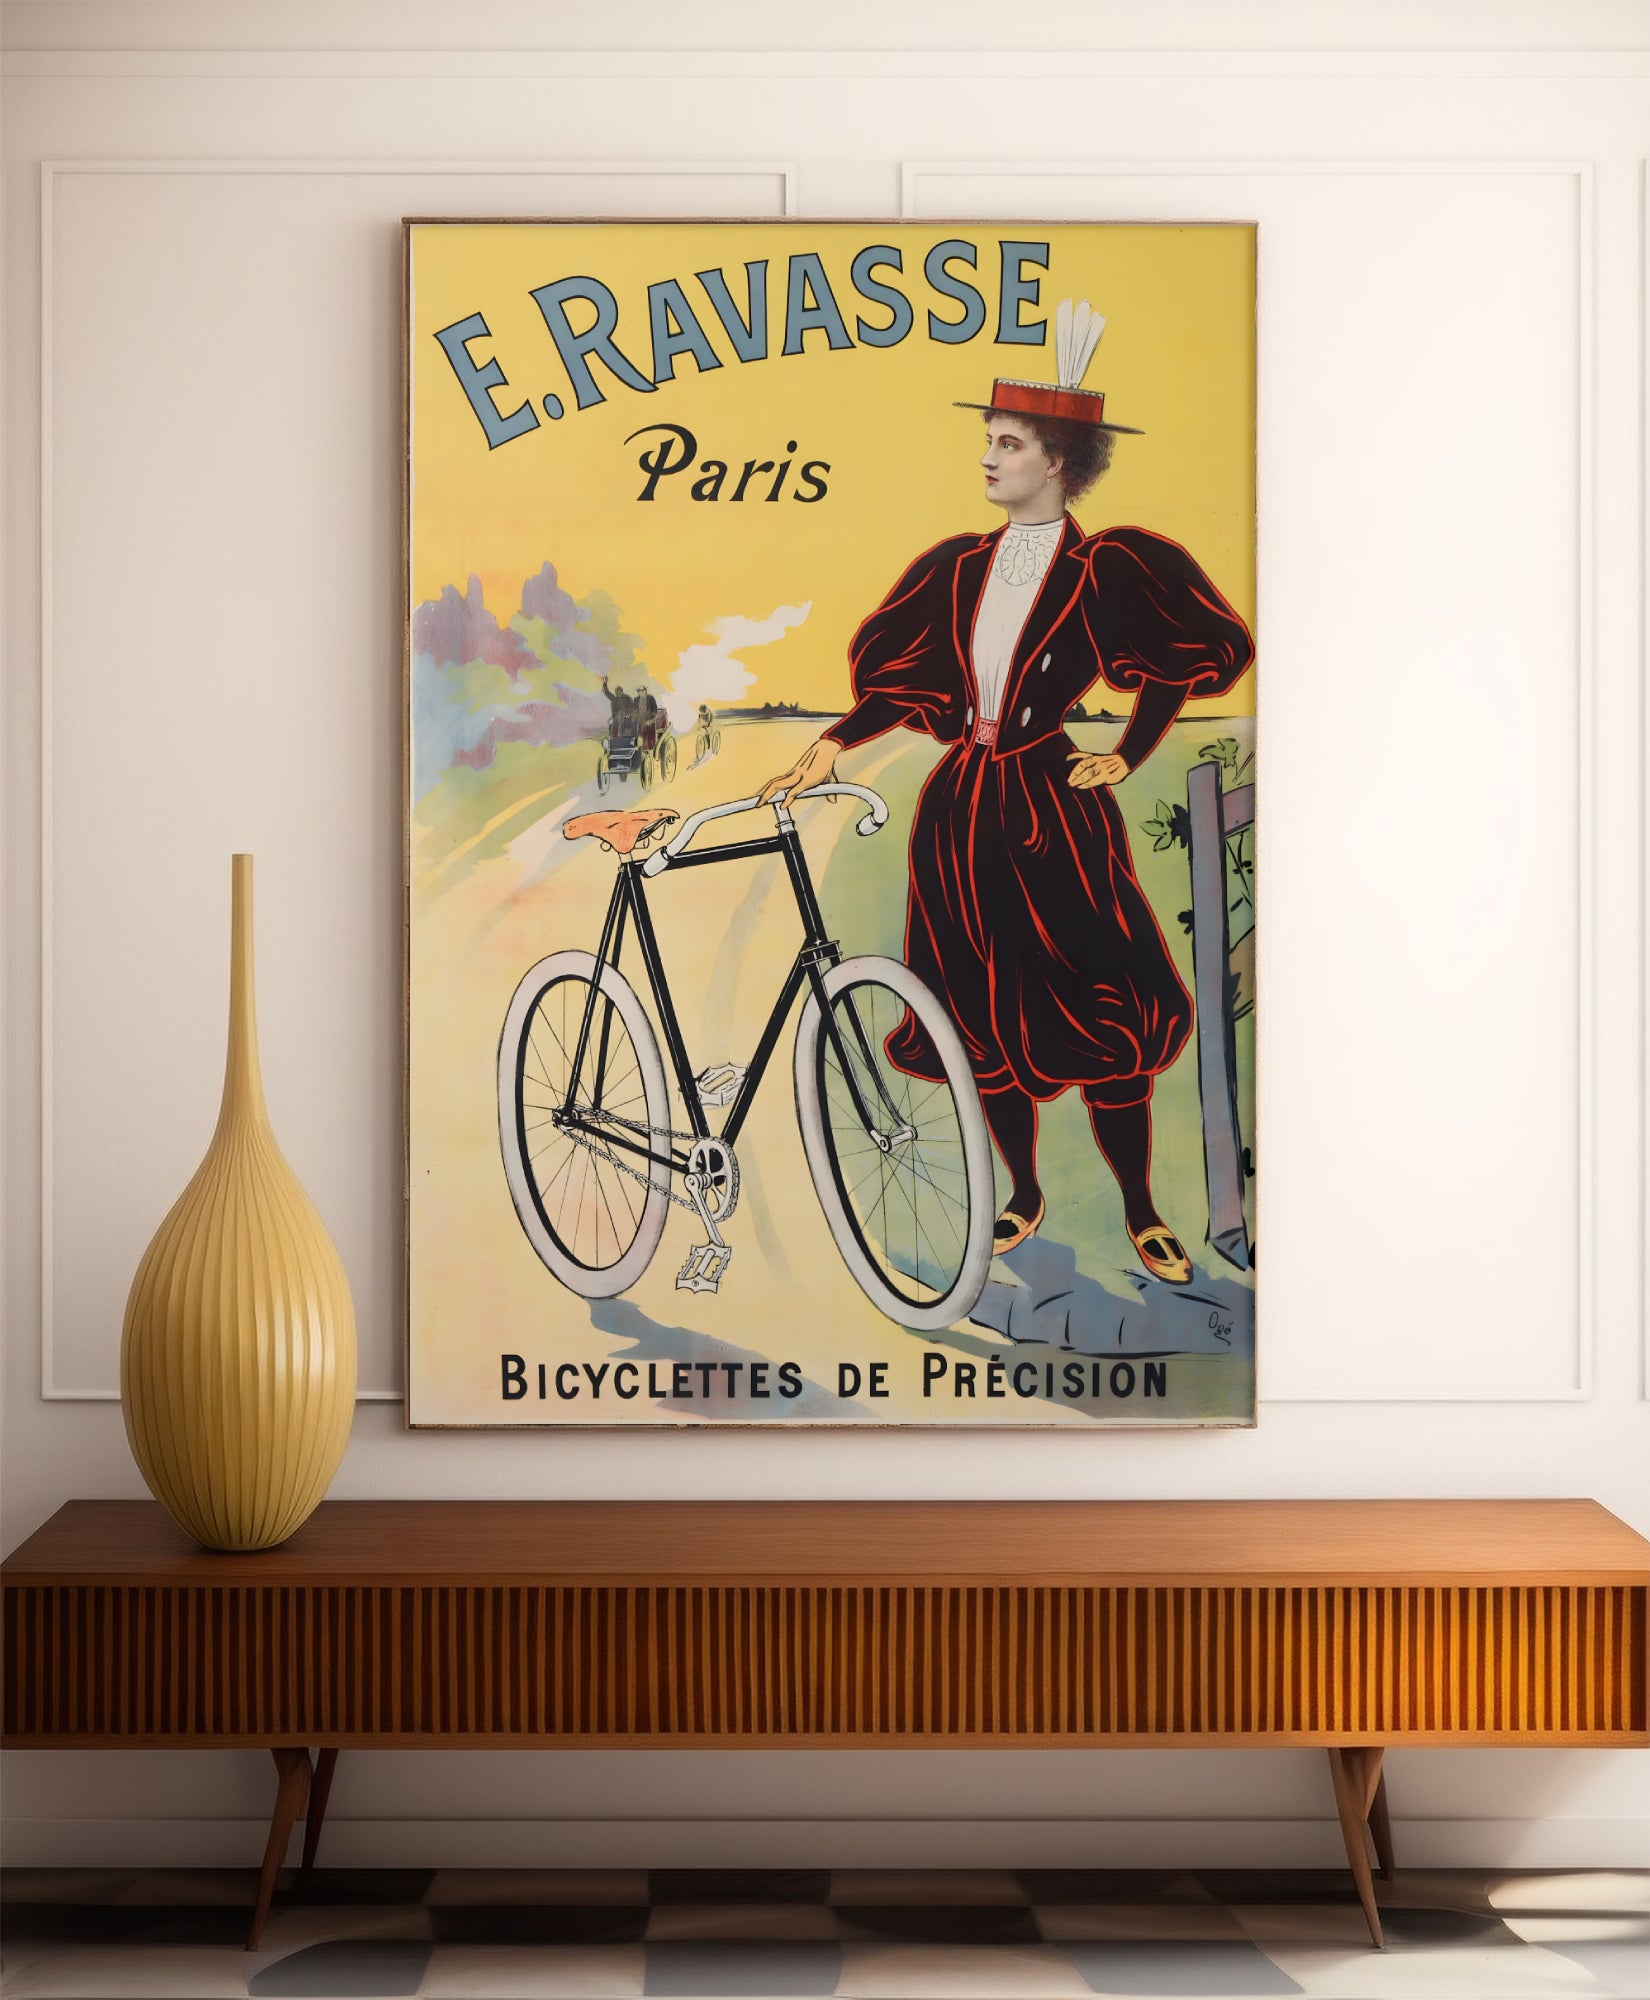 Vintage bicycle posters